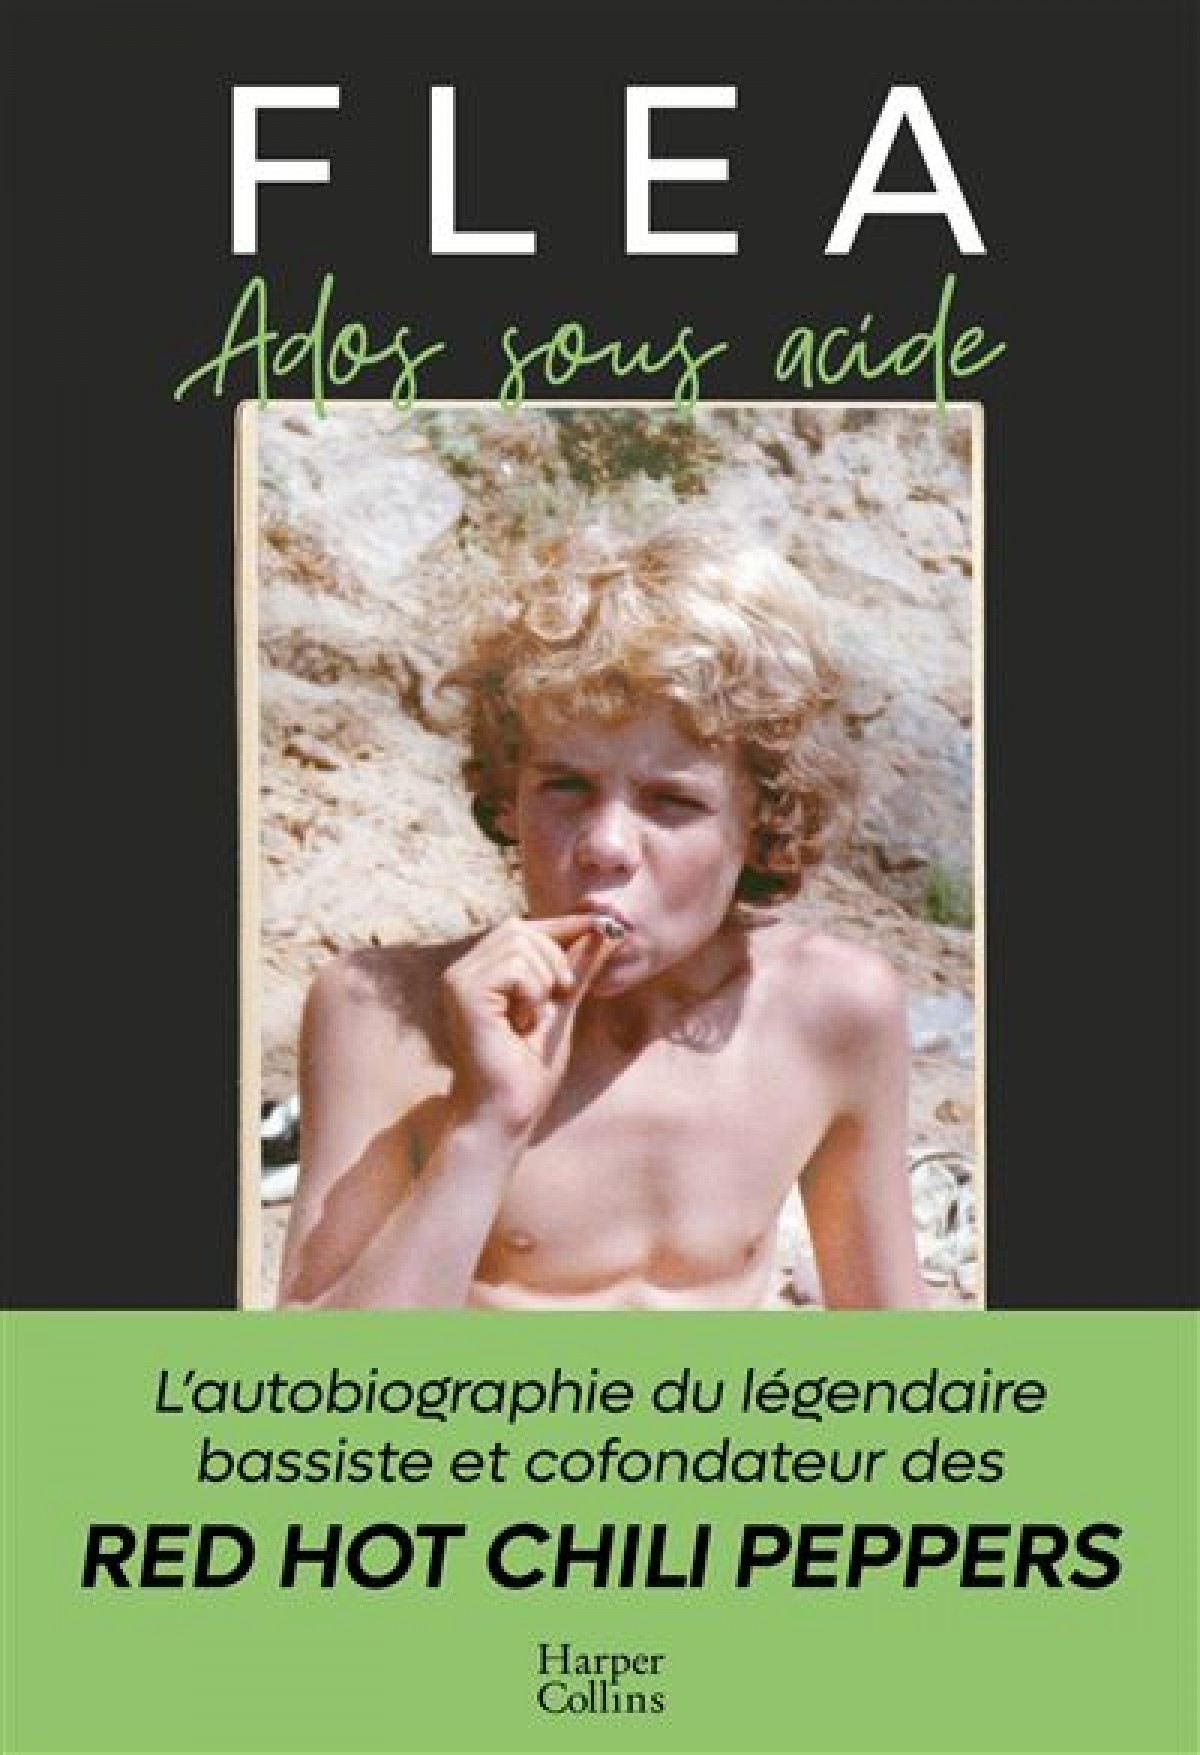 la biographie de Flea en français !!!